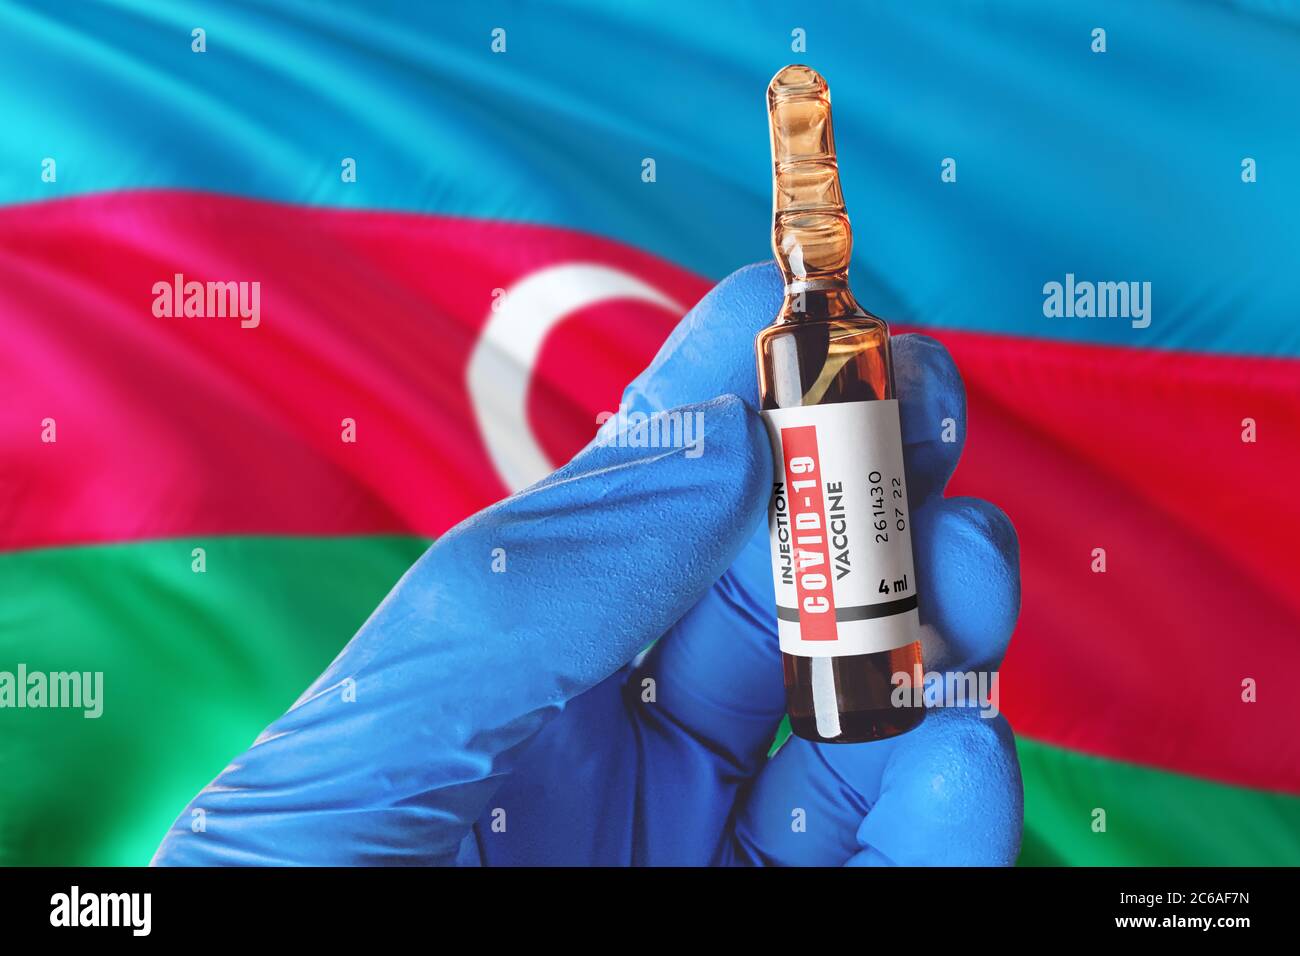 Aserbaidschan Flagge mit Coronavirus Covid-19 Konzept. Arzt mit blauen Schutz medizinische Handschuhe hält eine Impfstoffflasche. Coronavirus covid 19 Impfstoff res Stockfoto